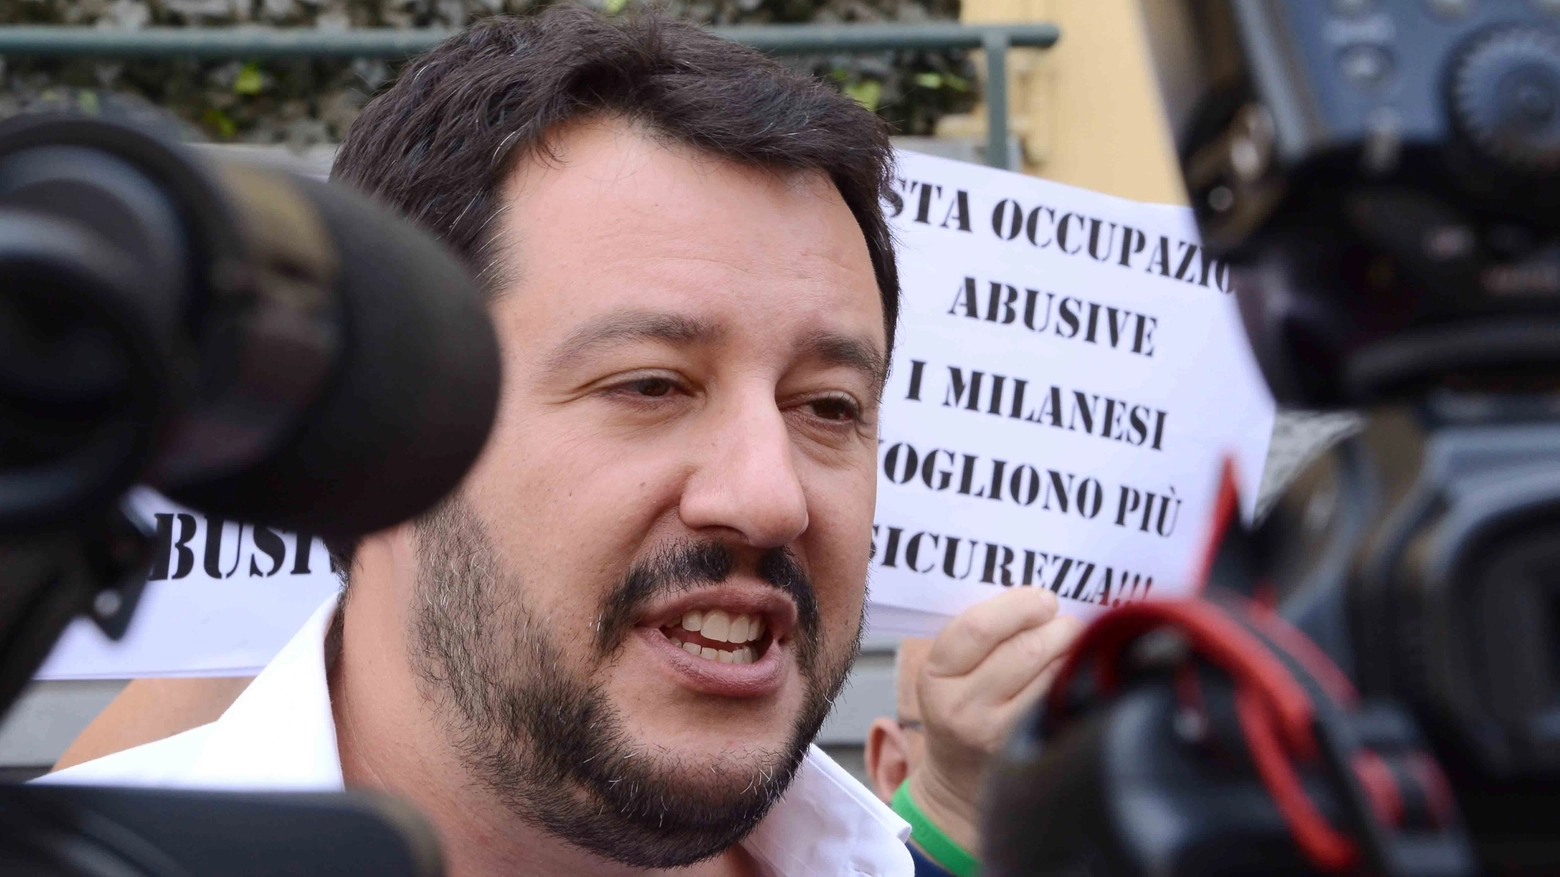 Matteo Salvini visita le case occupate in via Abbiati  zona San Siro a Milano (Alive)